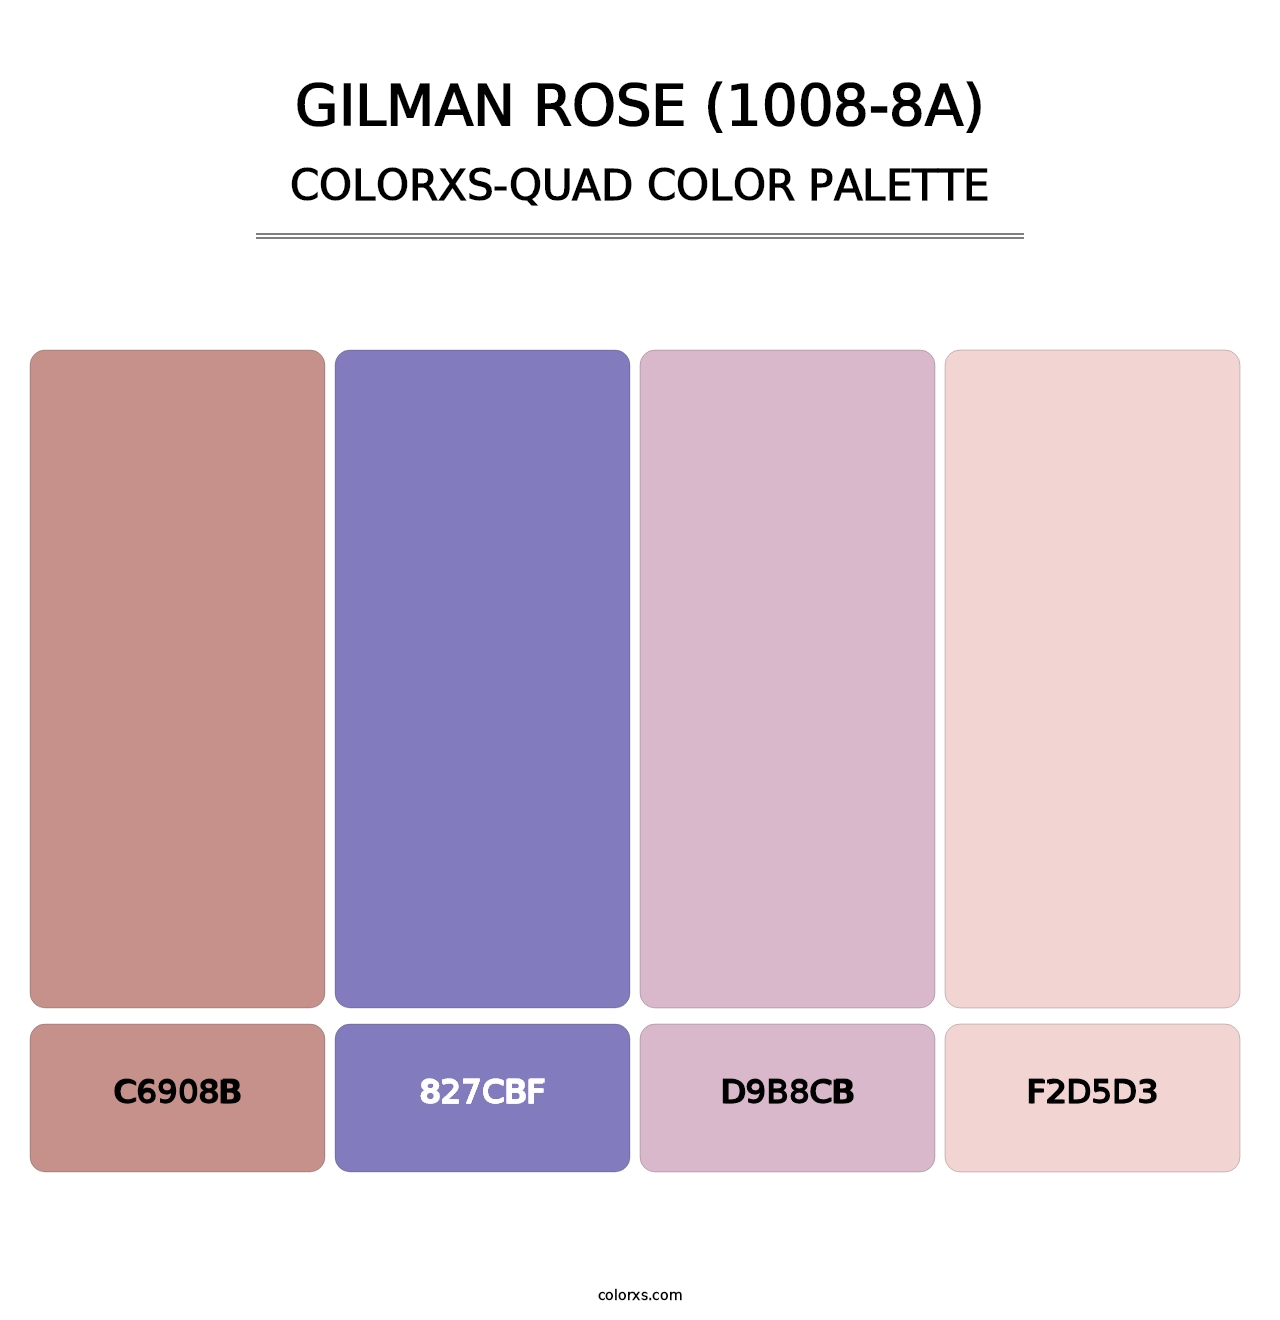 Gilman Rose (1008-8A) - Colorxs Quad Palette